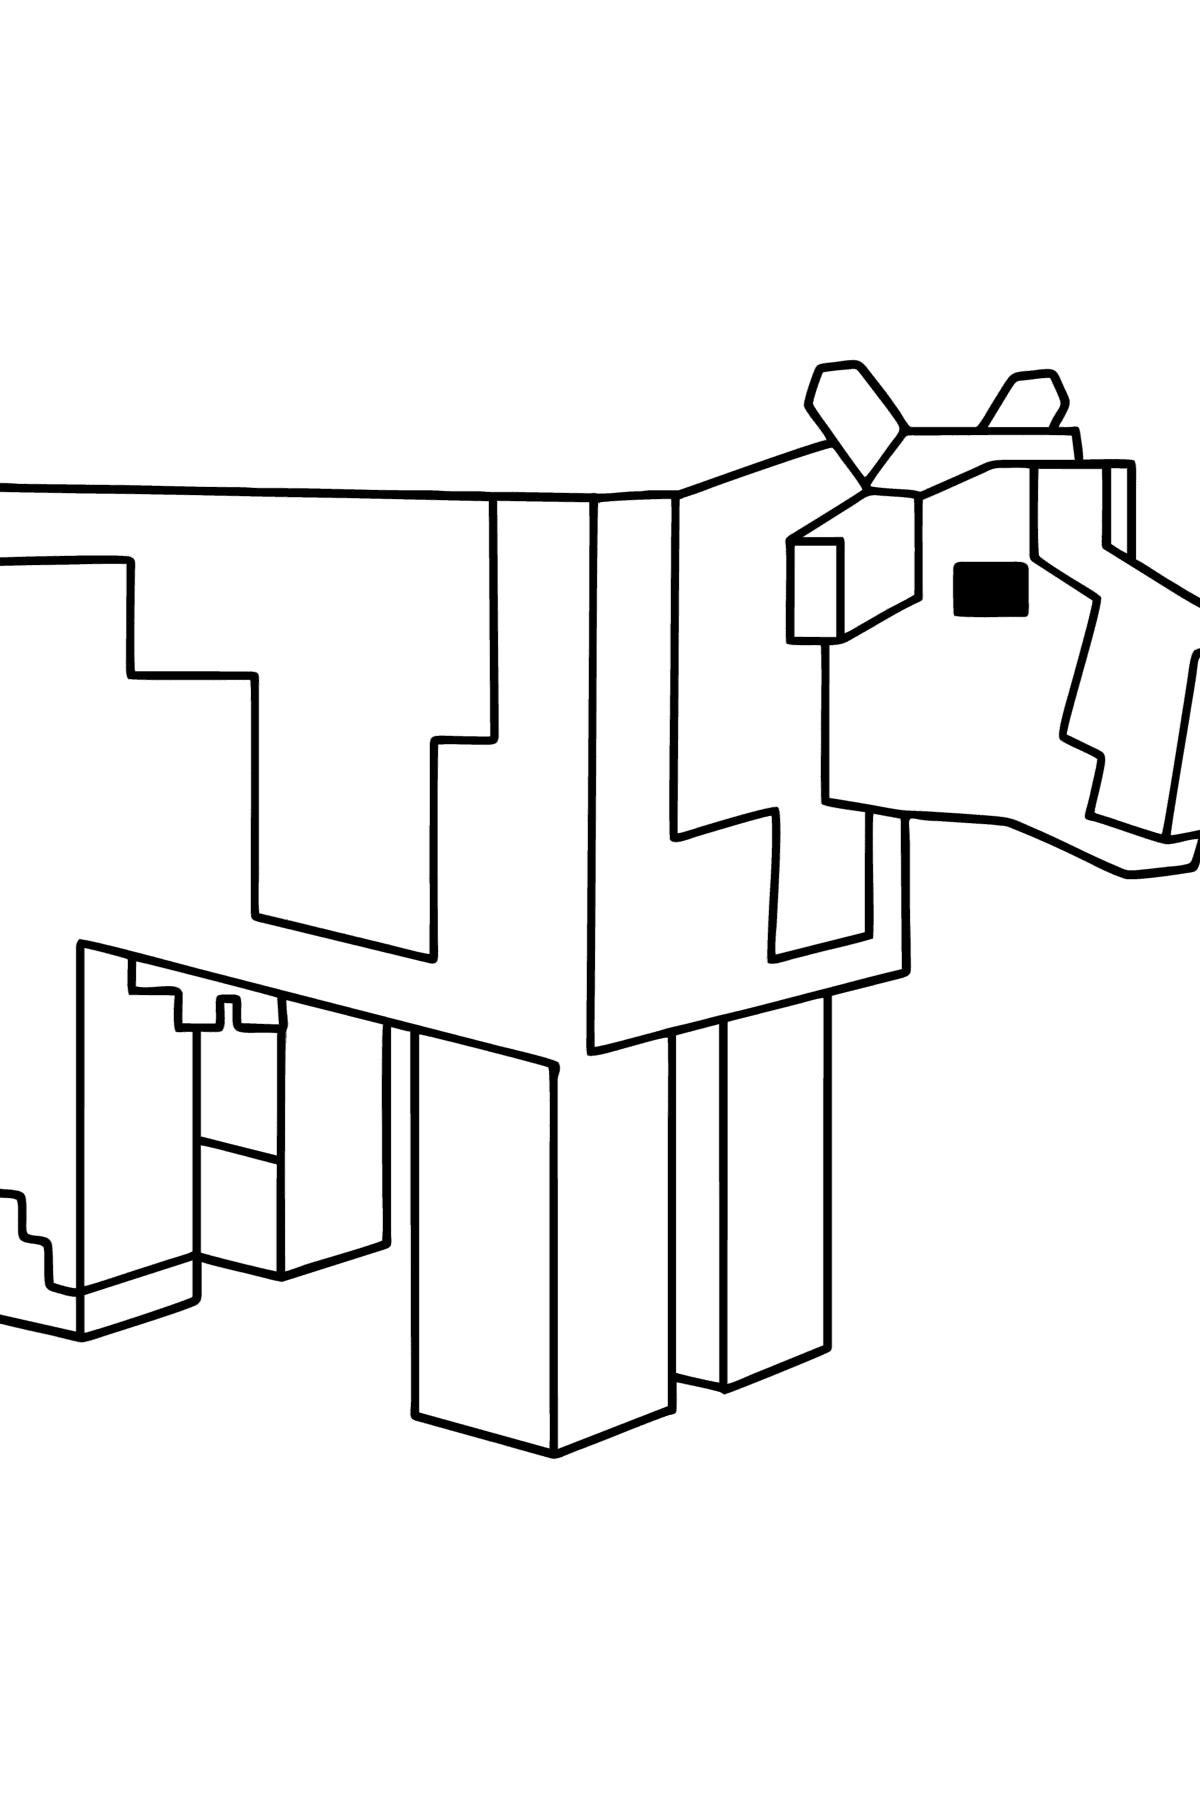 Desenho de Minecraft Cow para colorir - Imagens para Colorir para Crianças